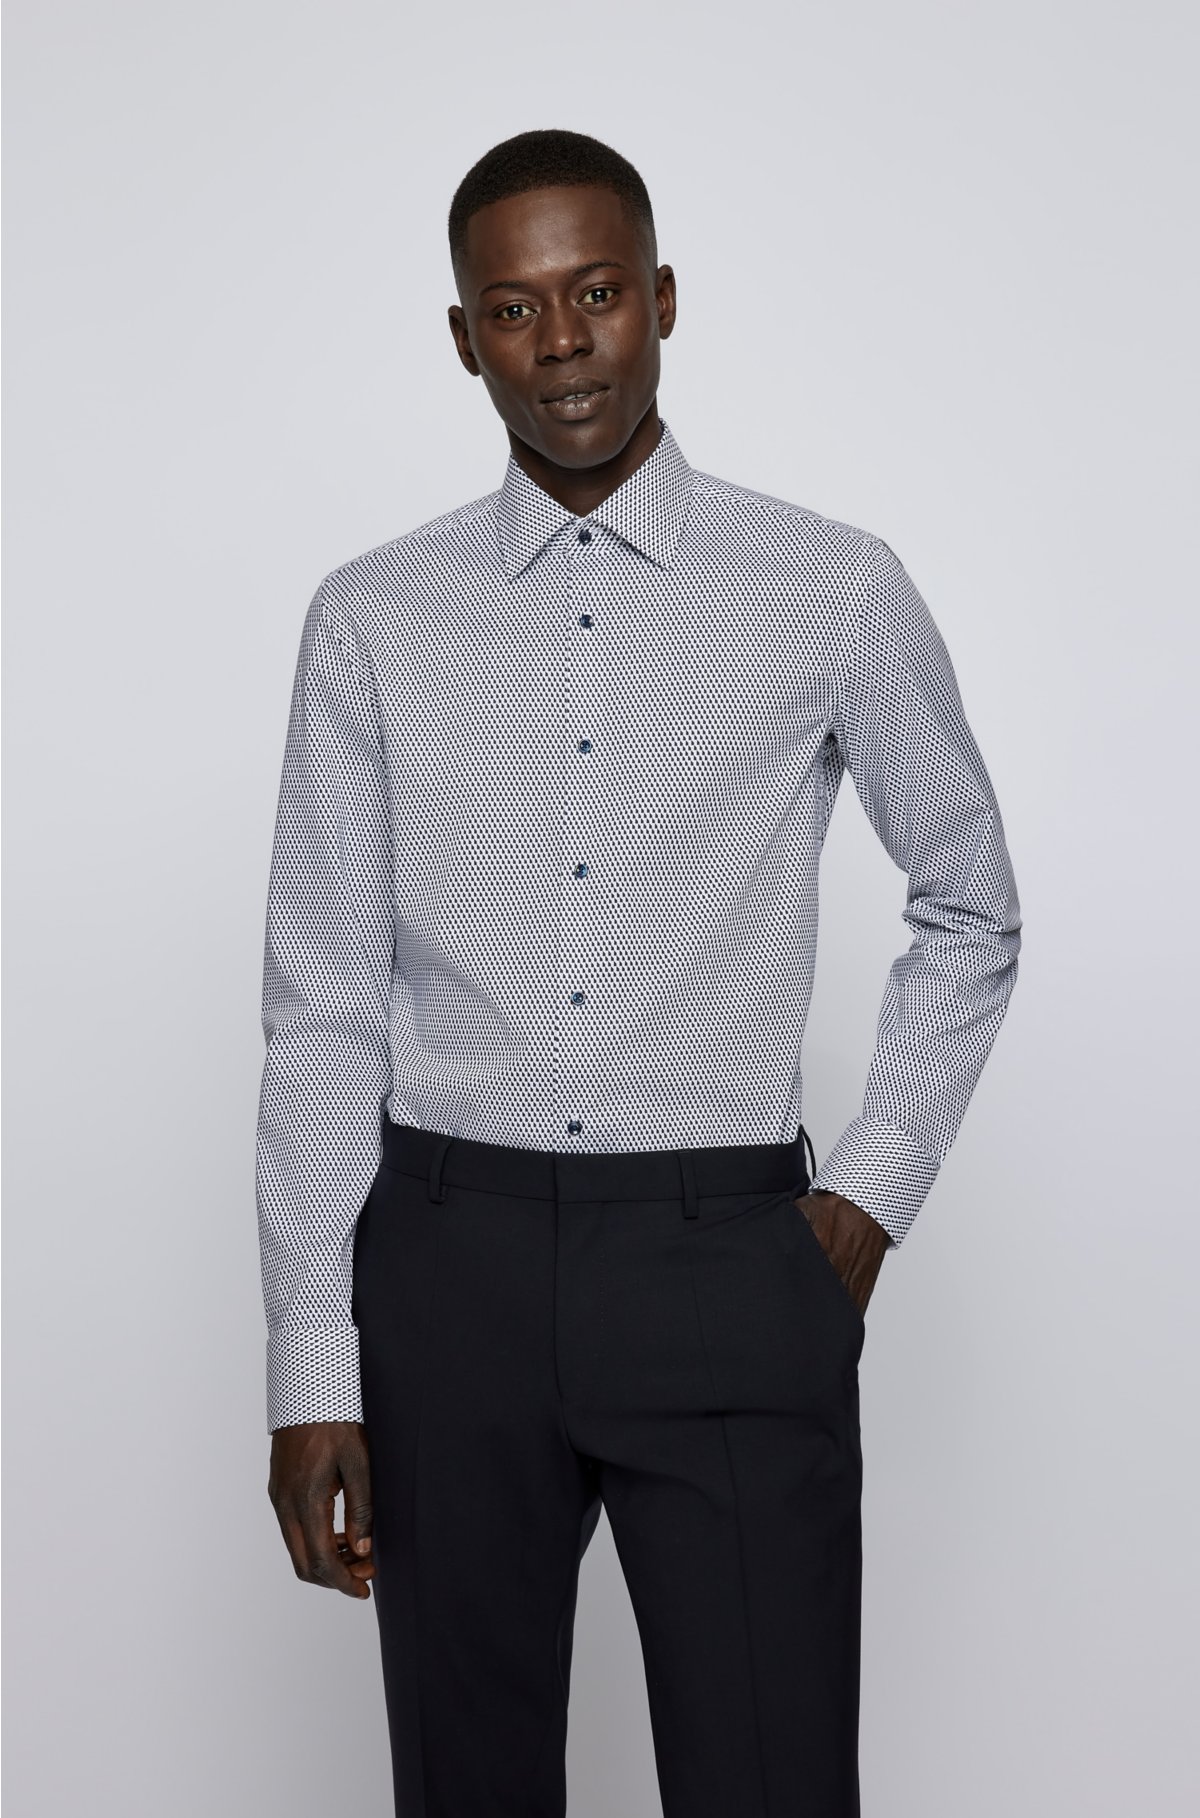 Calvin Klein - mixed monogram t-shirt slim fit - girls - dstore online